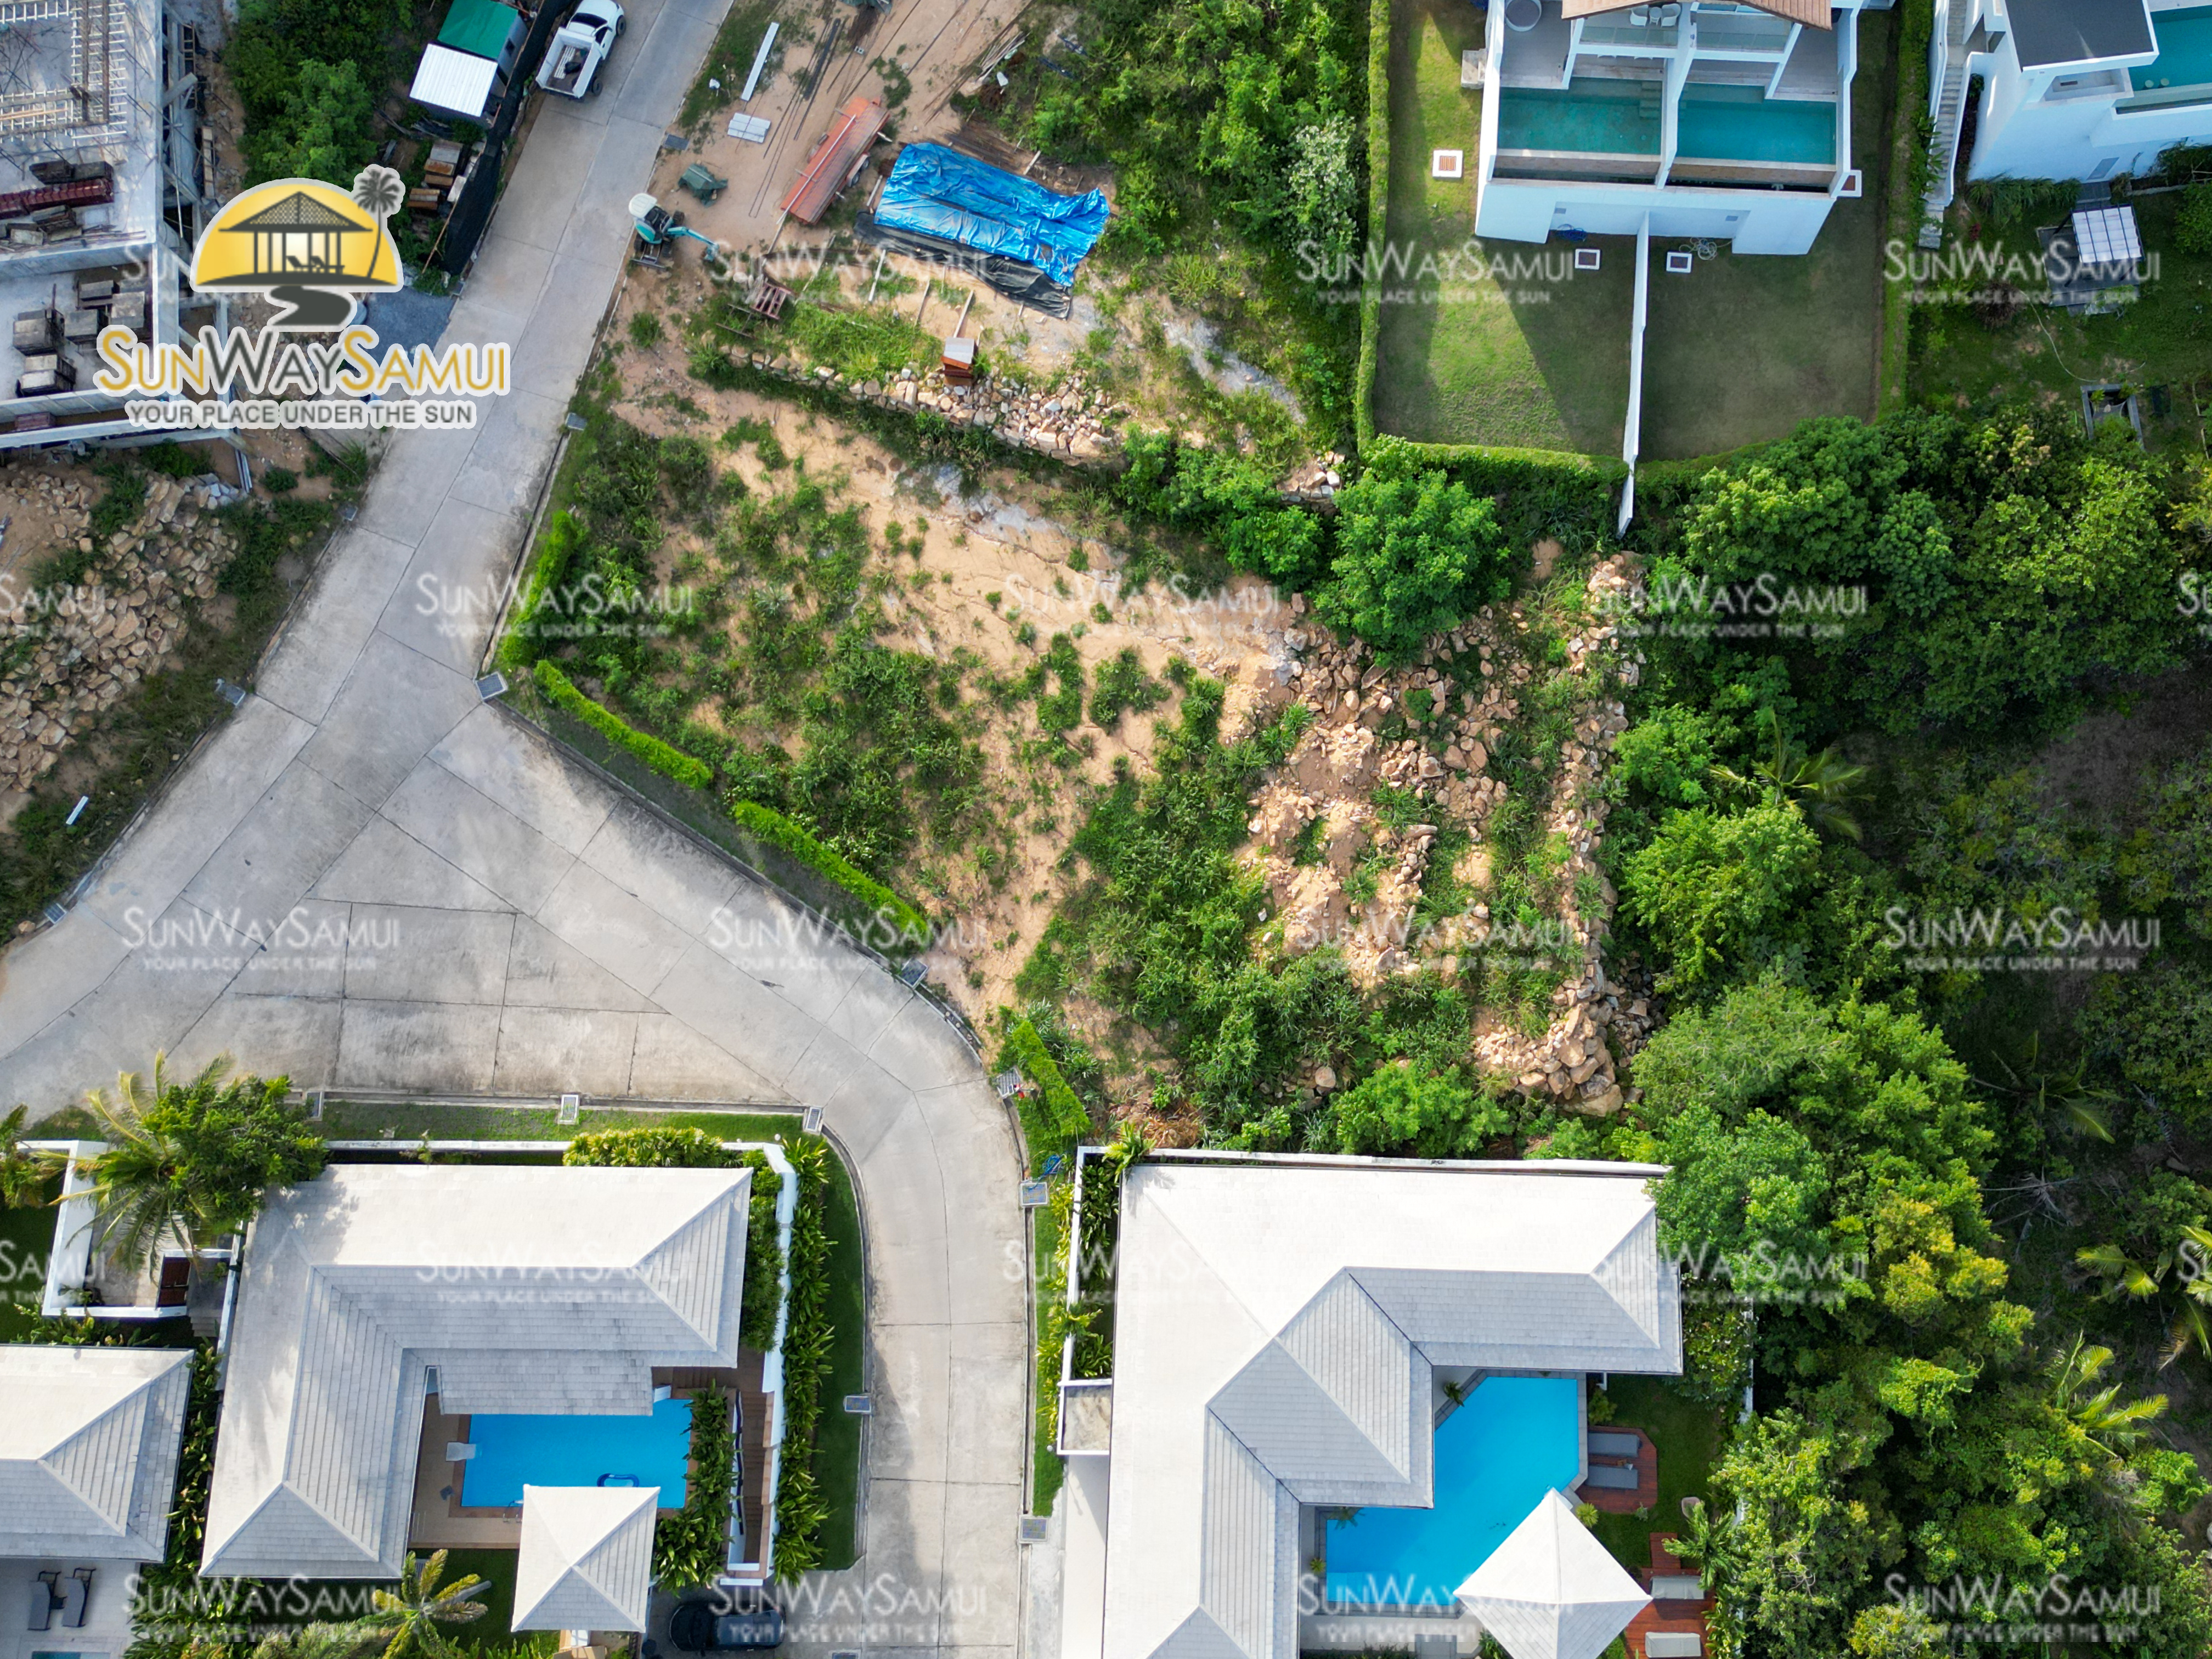 Horizon Villas - Prestigious 3 Bedroom Garden Pool Villa in Choeng Mon for Sale: Prestigious 3 Bedroom Garden Pool Villa in Choeng Mon for Sale